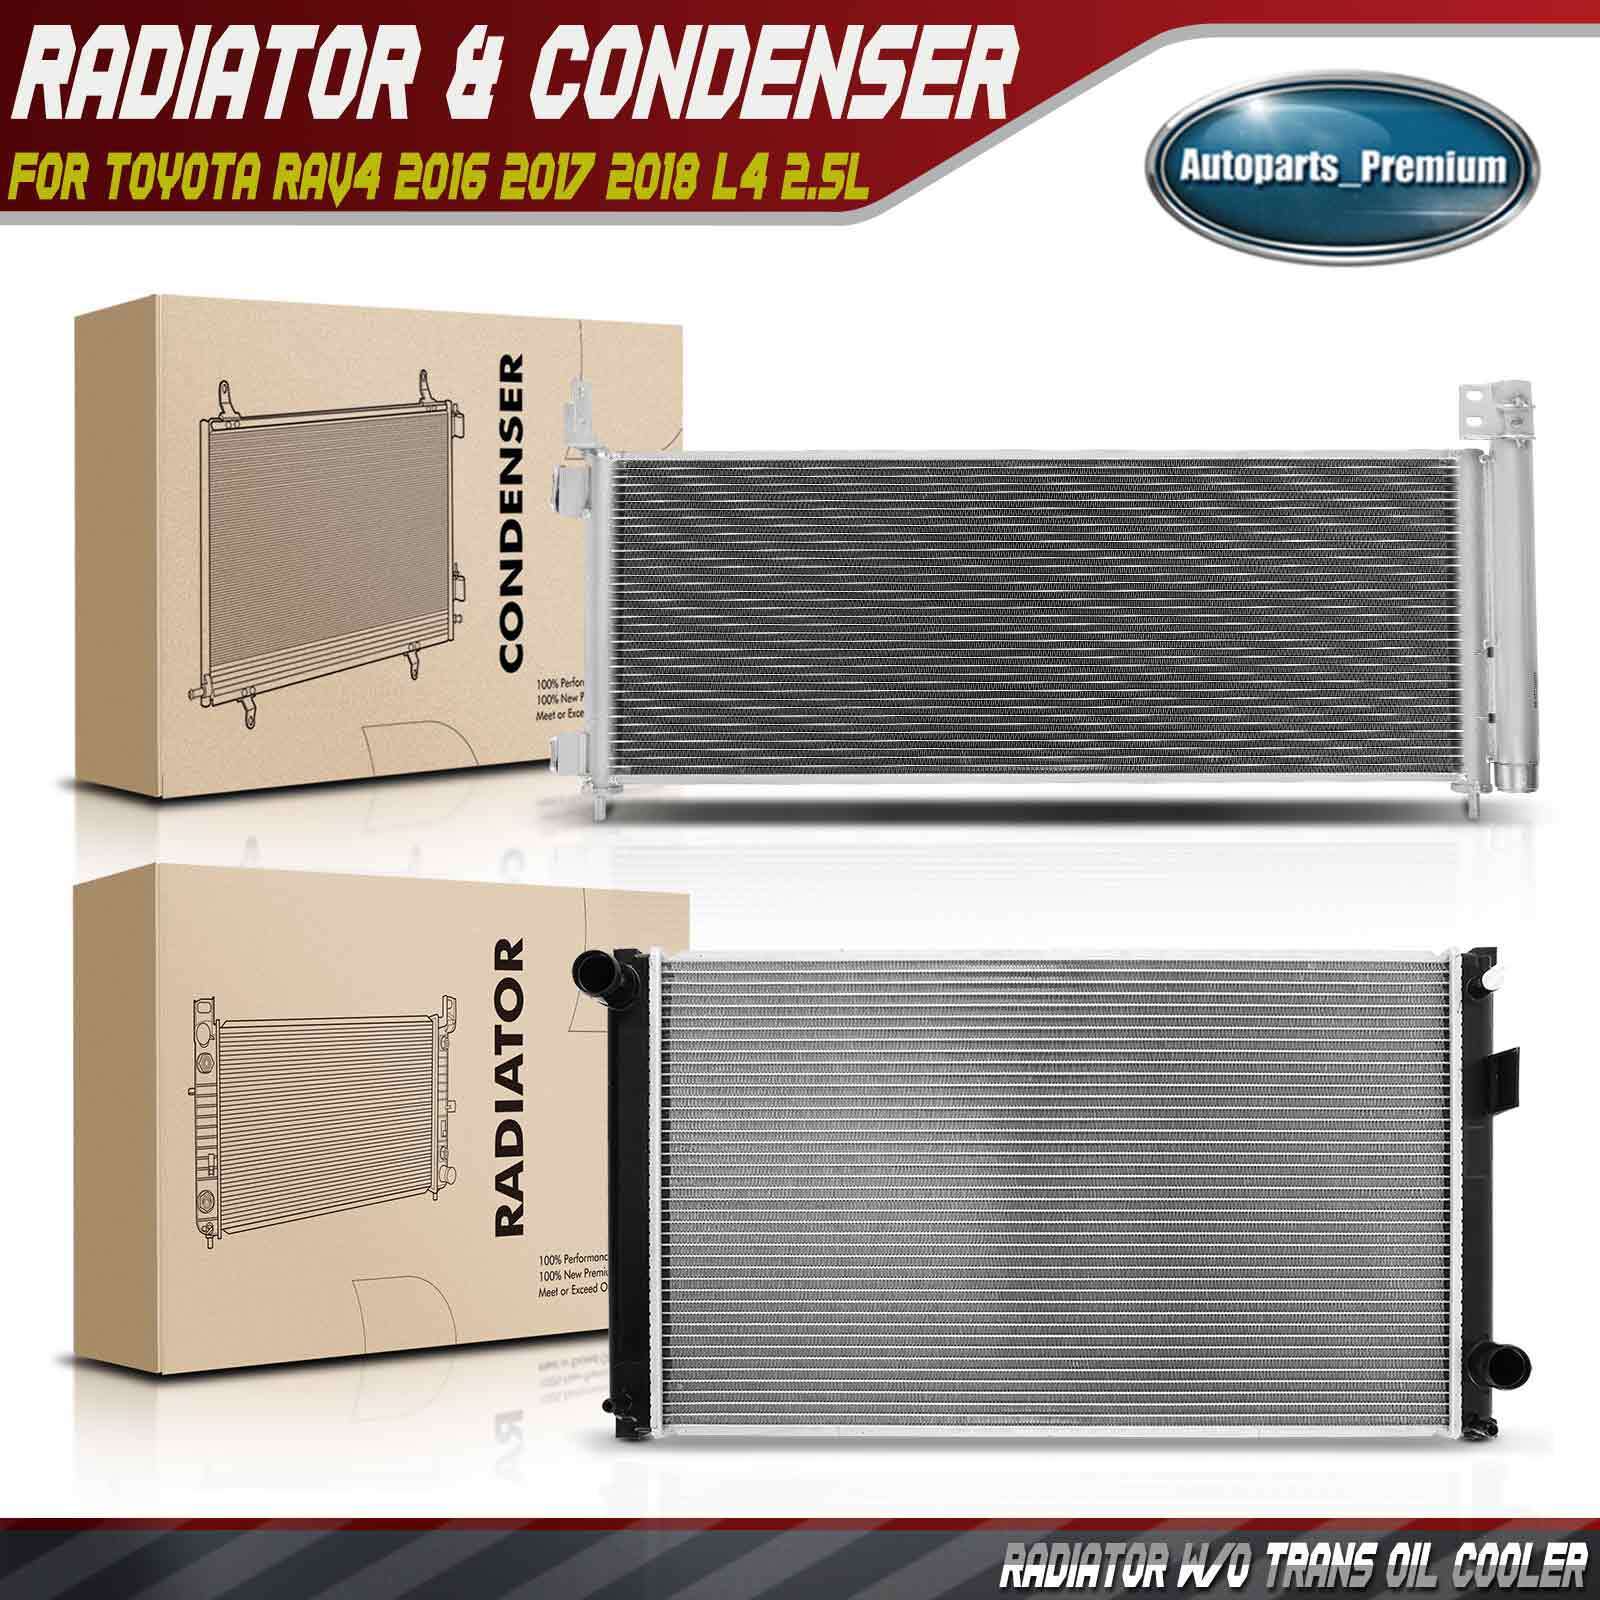 2x Radiator & AC Condenser Cooling Kit for Toyota RAV4 2016 2017 2018 L4 2.5L